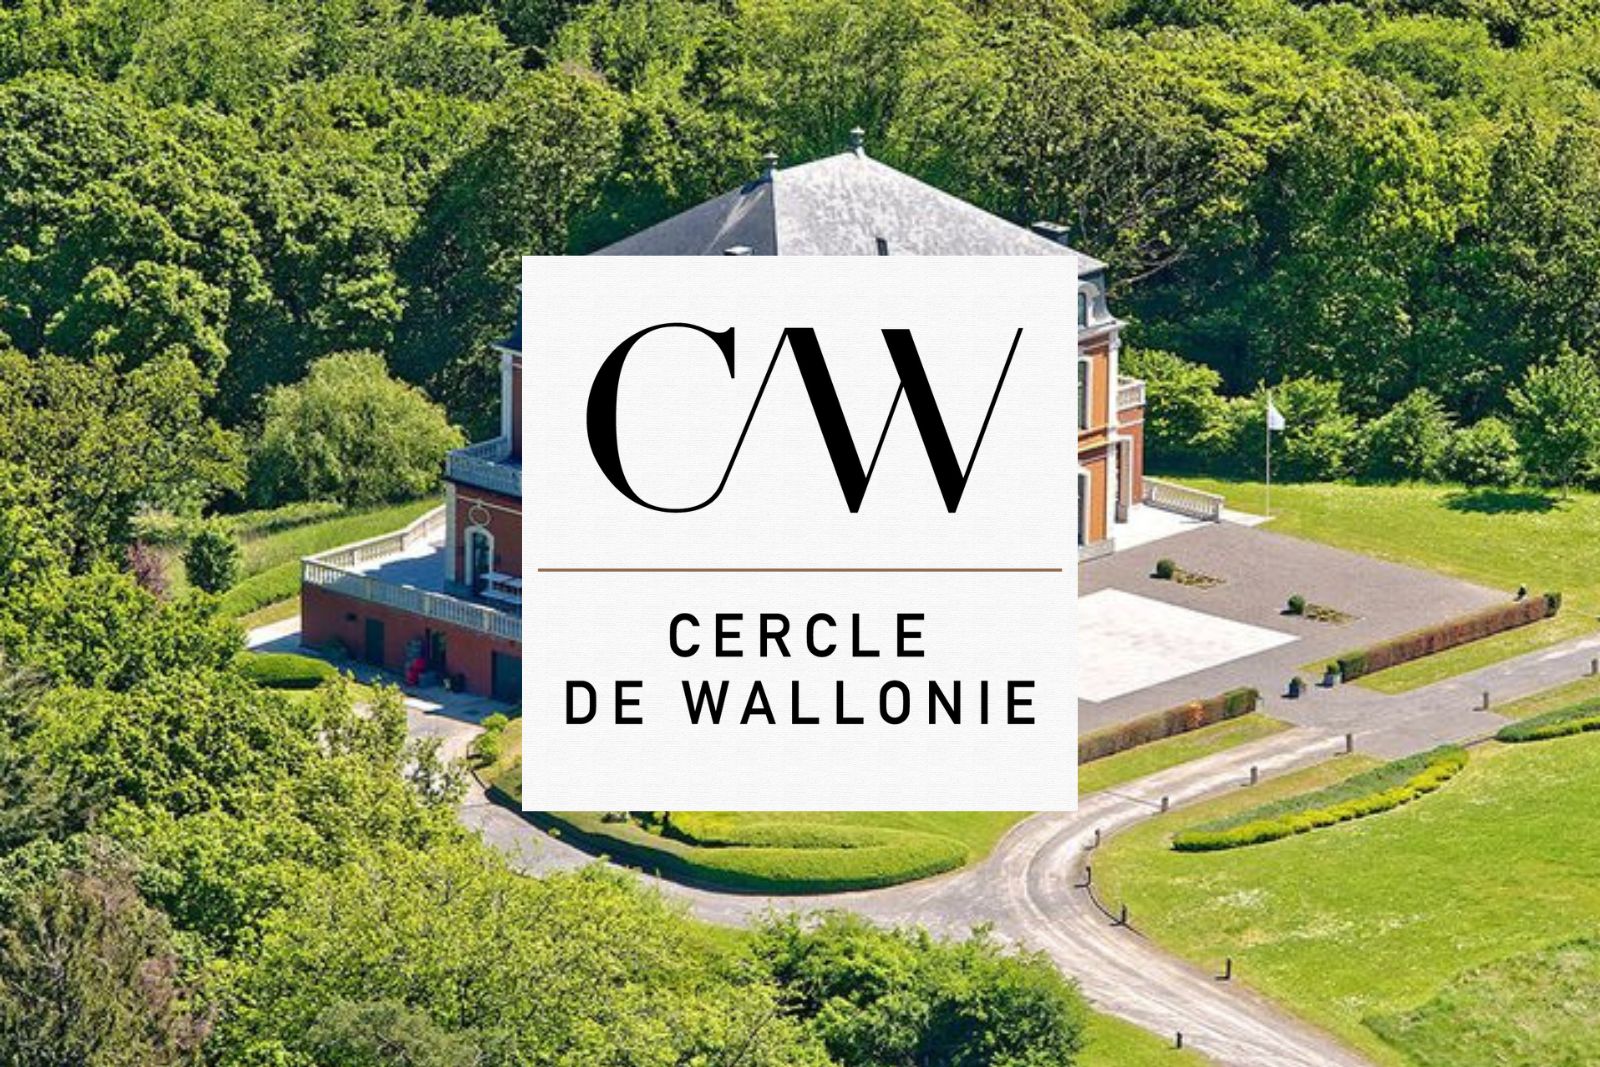 Cercle de Wallonie